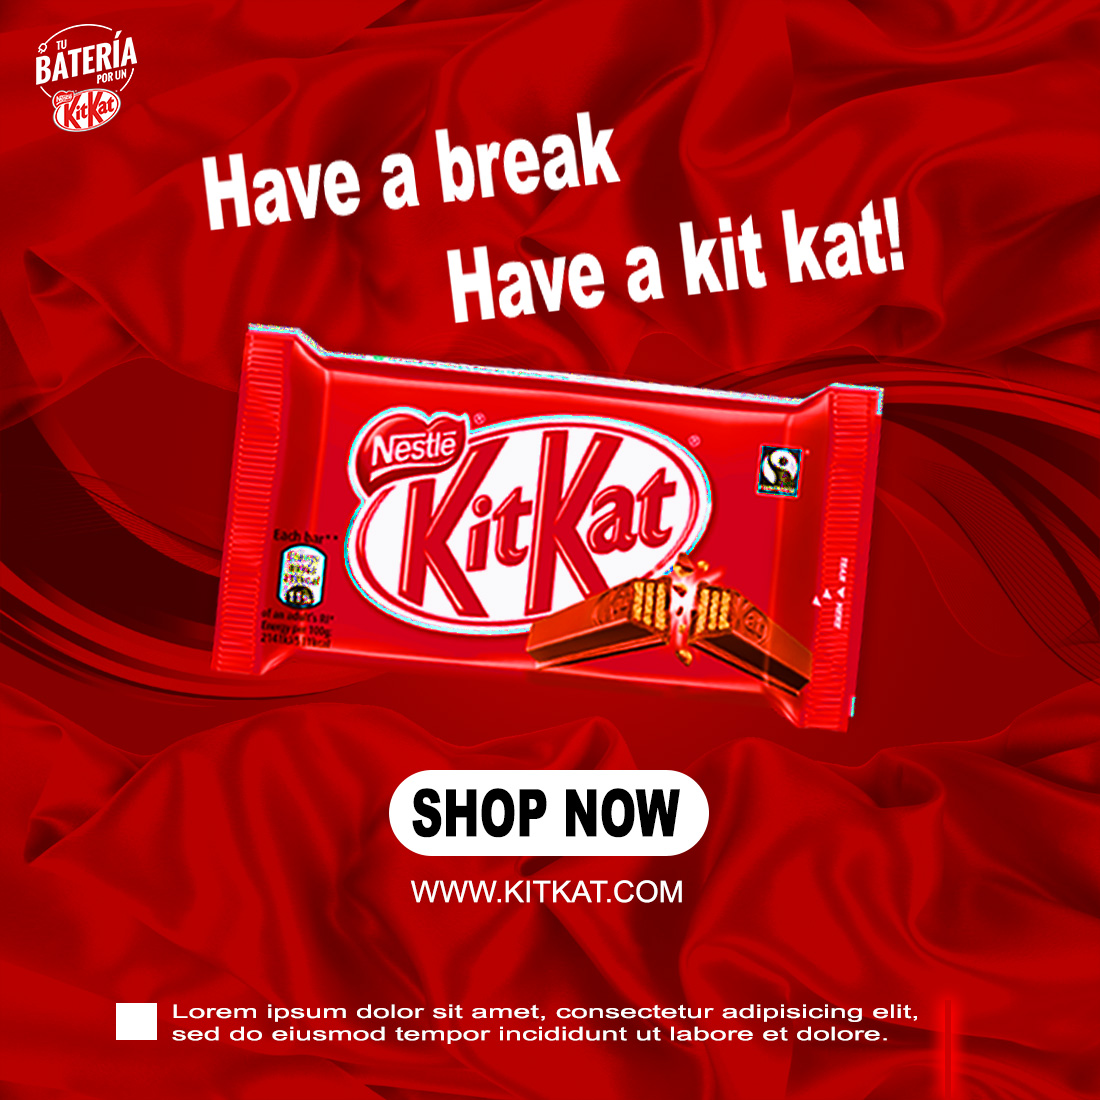 KitKat SOCIAL MEDIA POSTER DESIGN preview image.